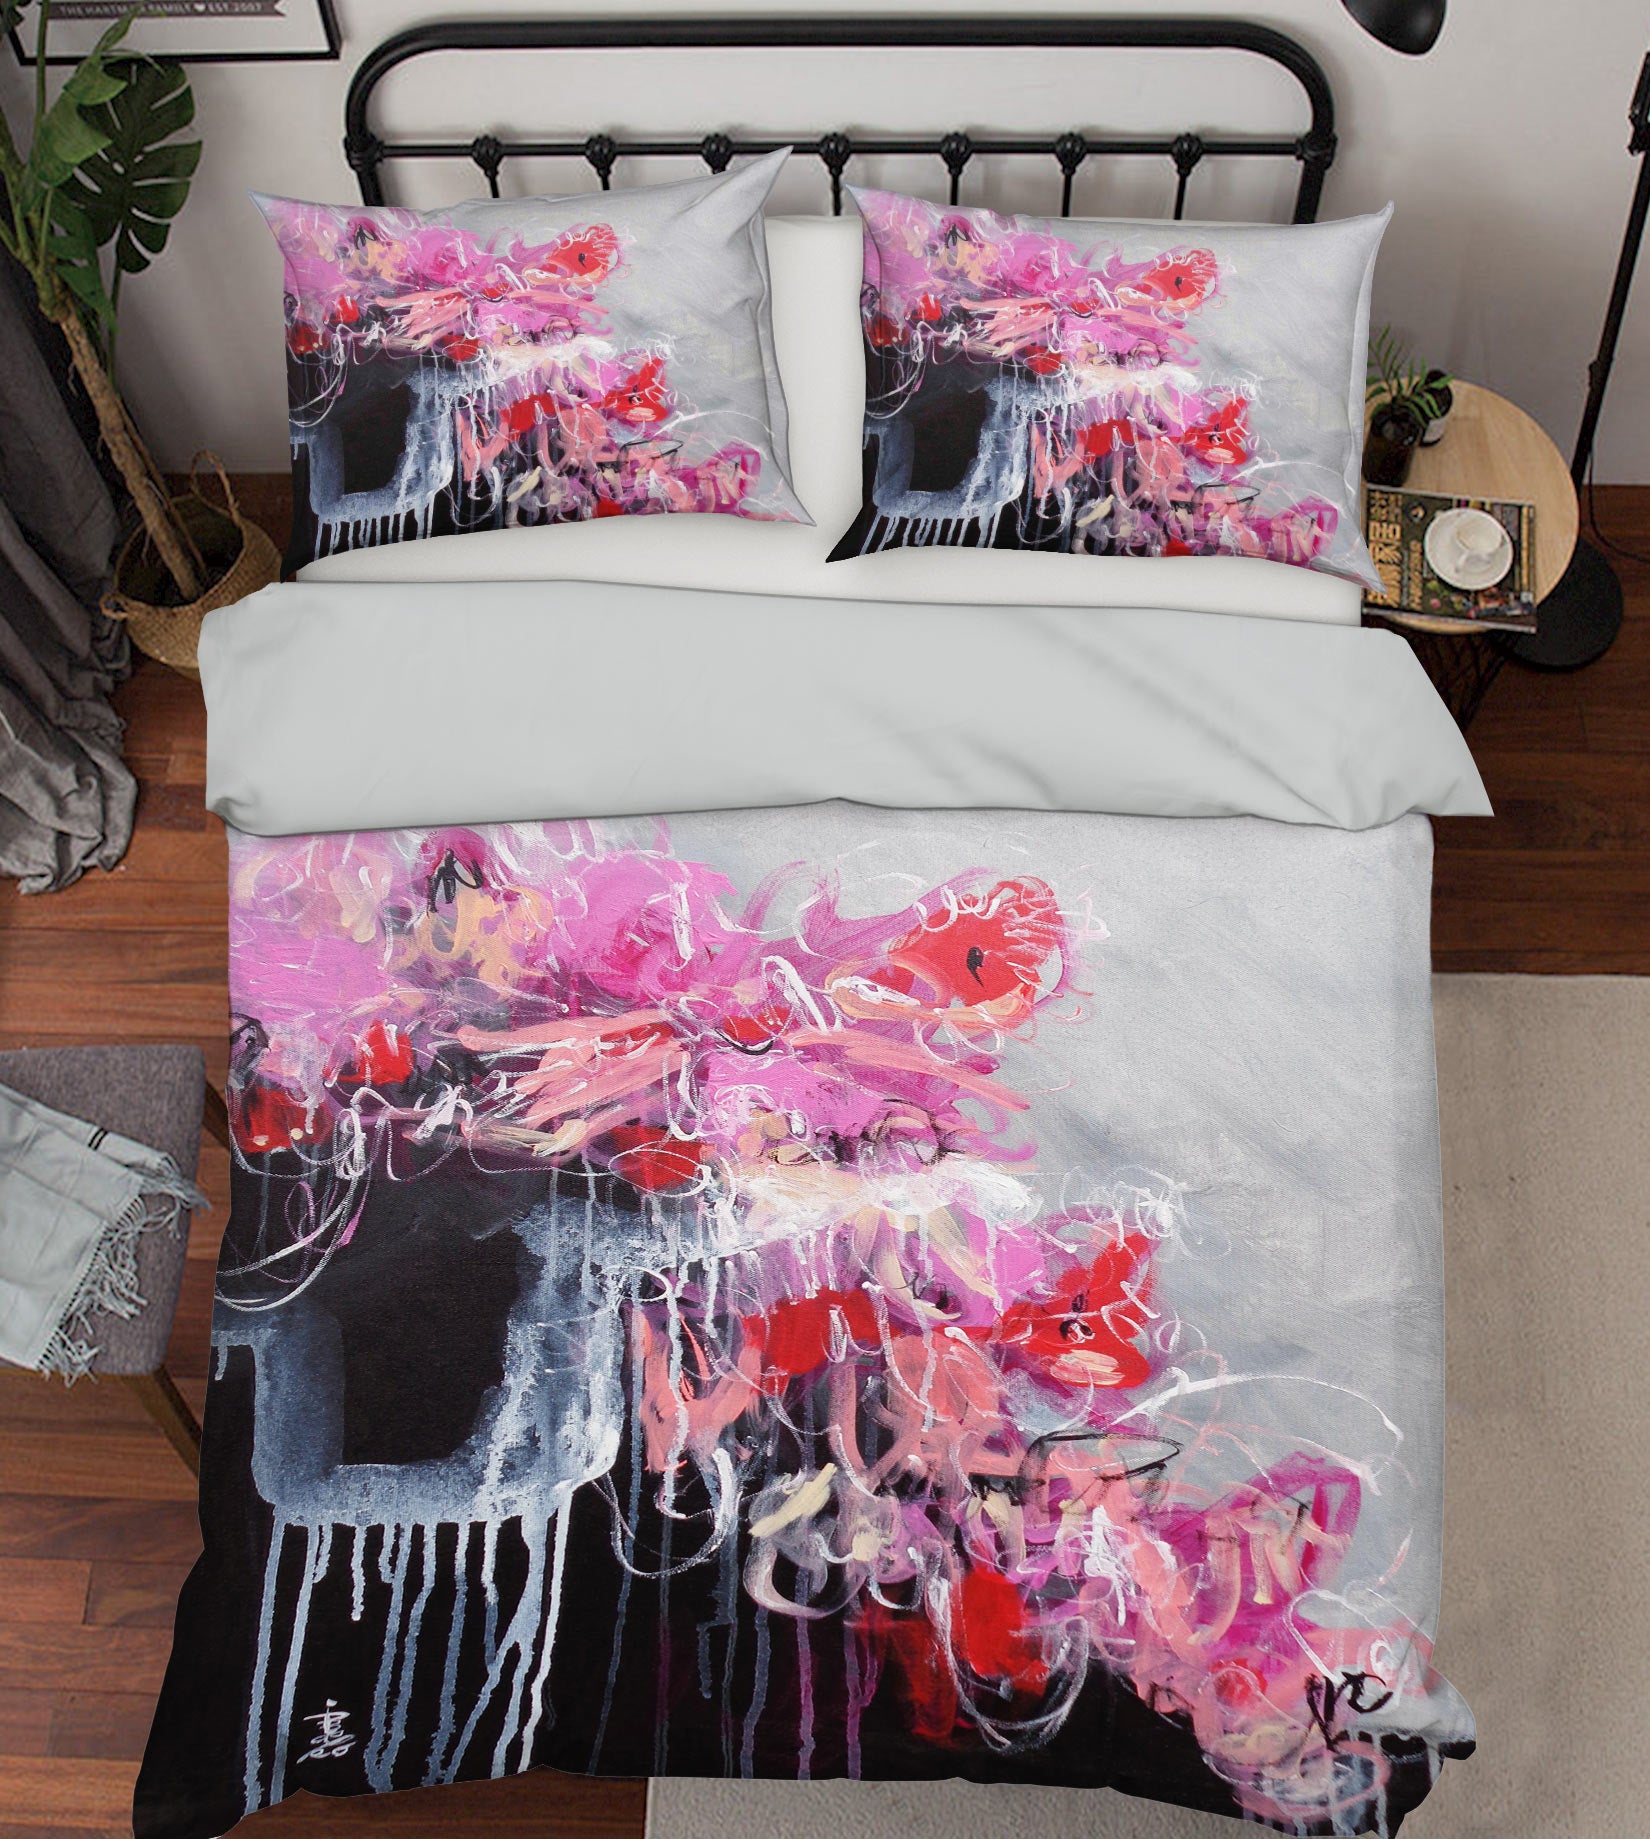 3D Pink Graffiti 1231 Misako Chida Bedding Bed Pillowcases Quilt Cover Duvet Cover